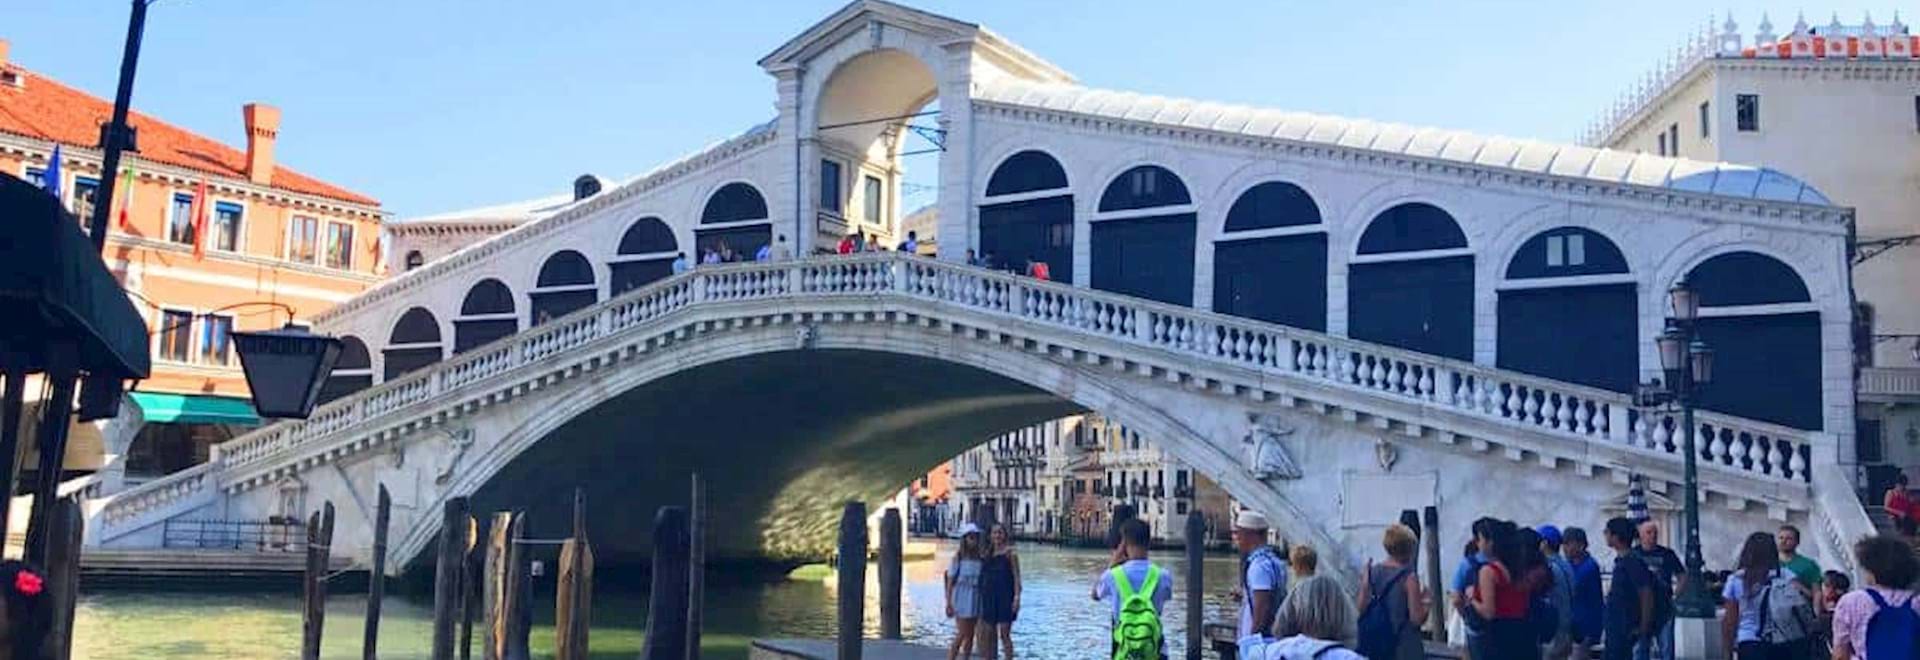 Beautiful view of the Rialto Bridge in Venice